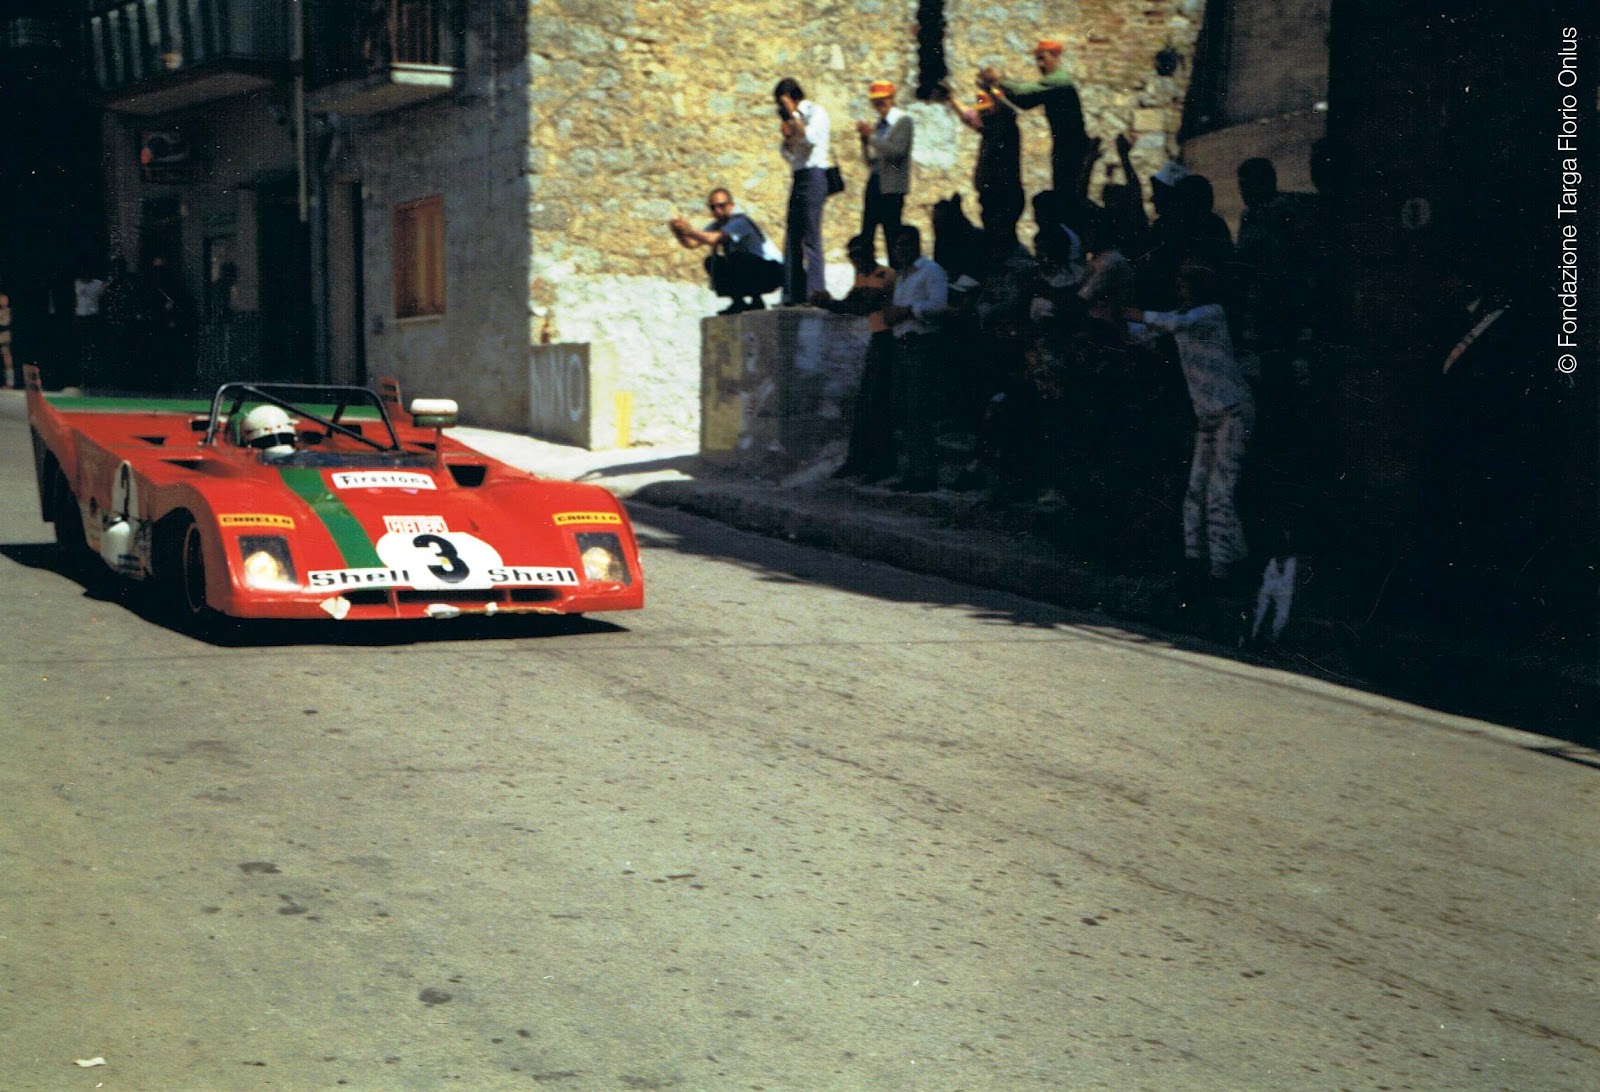 1972 Ferrari Merzario